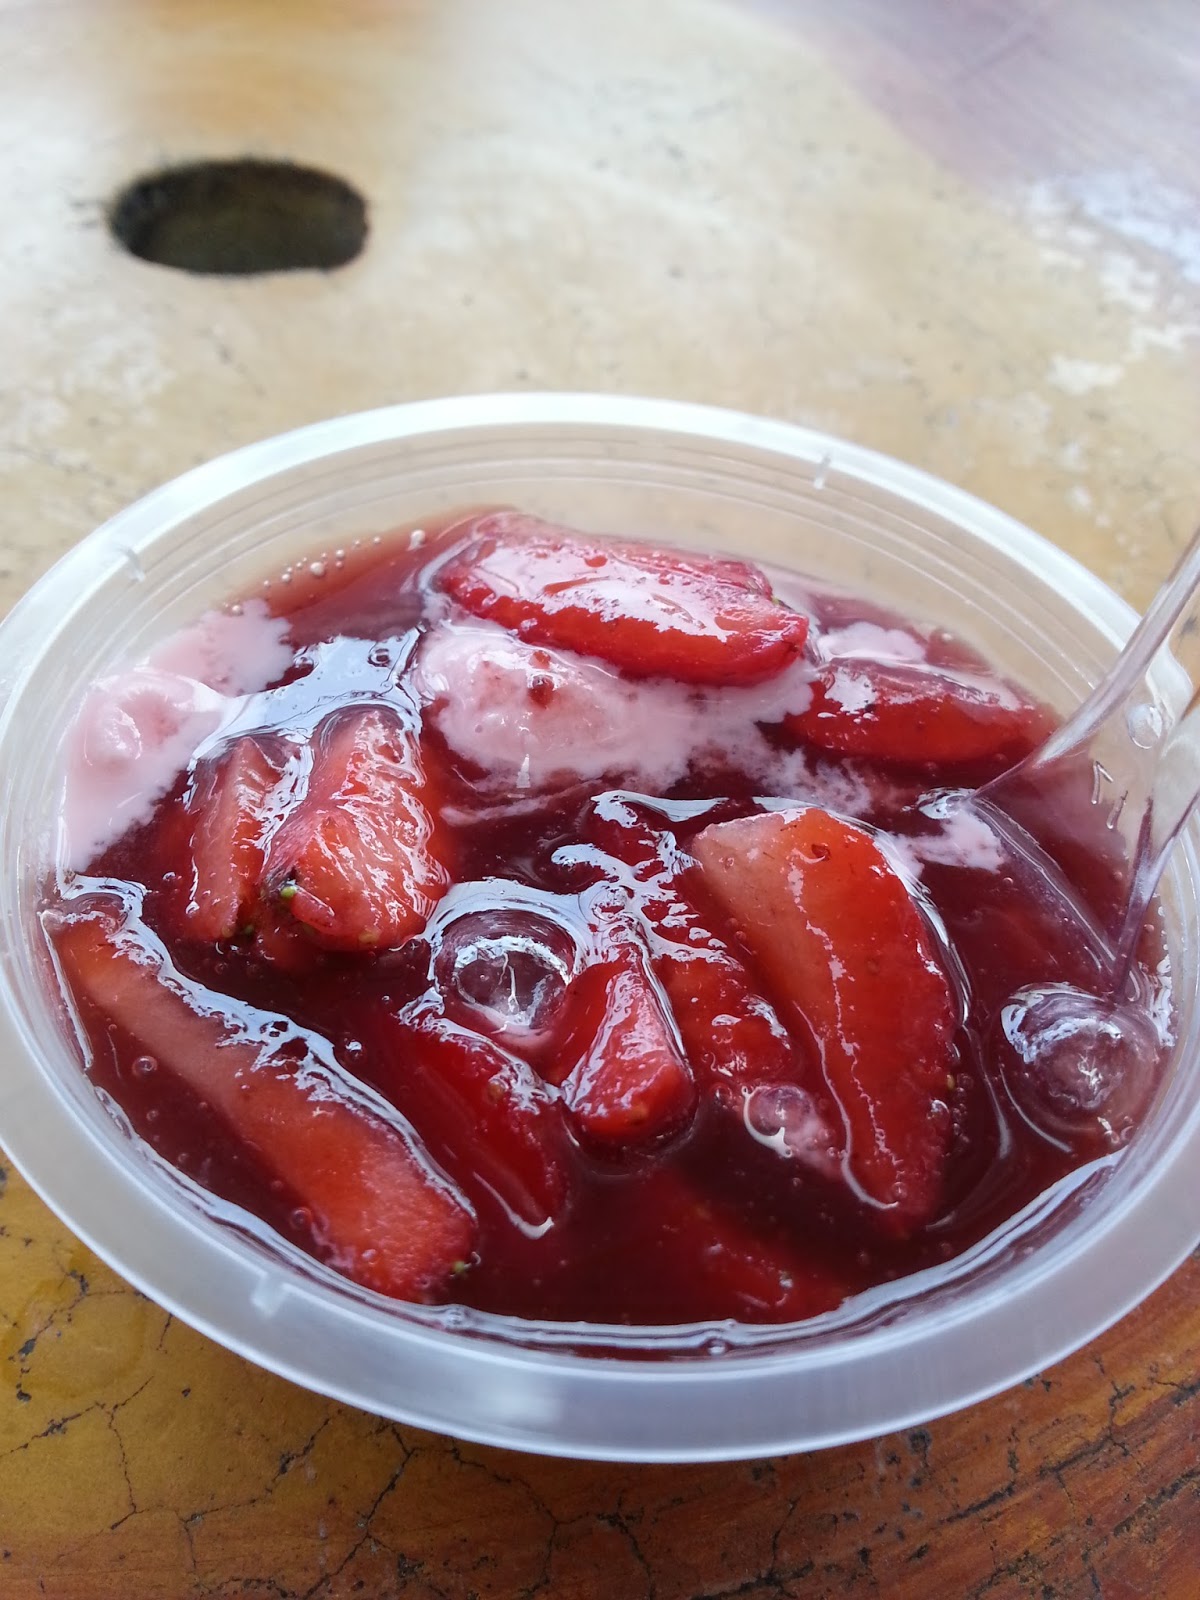 Aiskrim & Ice Blended Strawberry